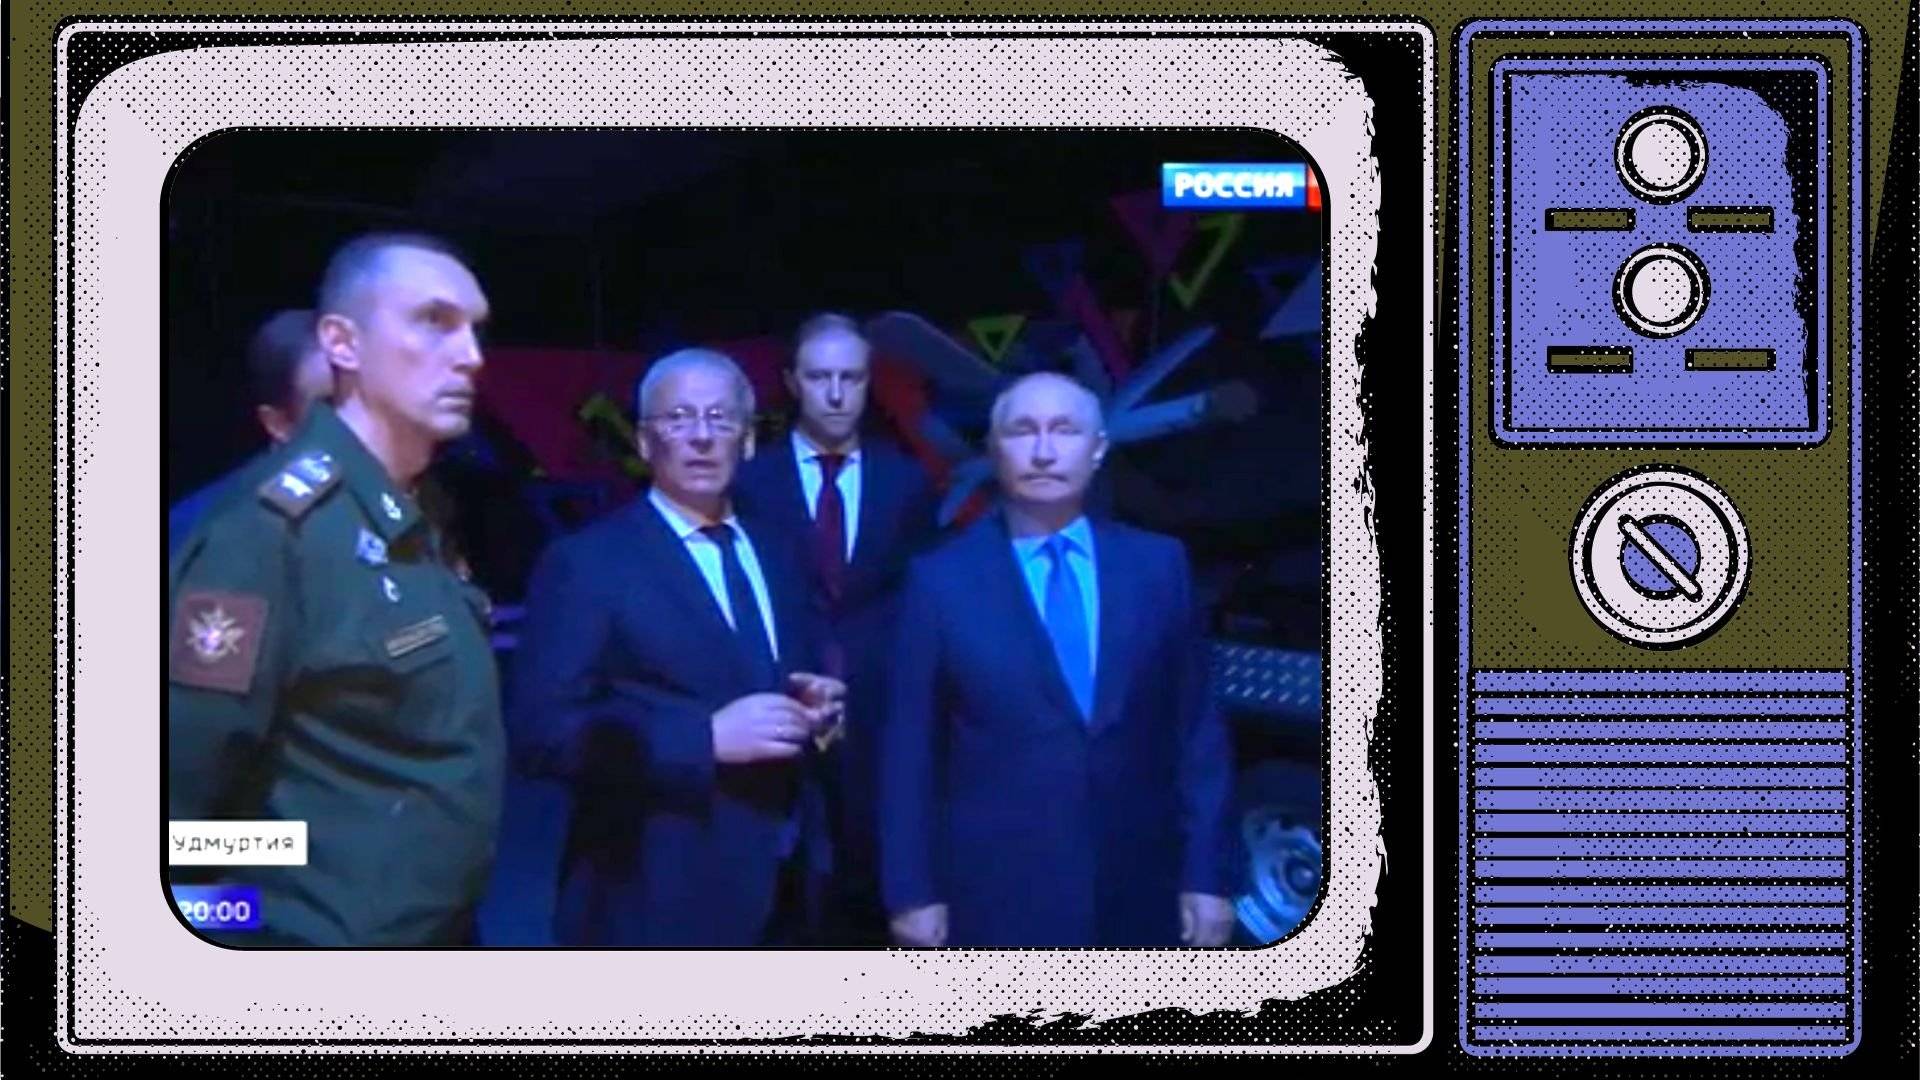 Grafika: w ramce starego telewizora ciemne zdjęcie Putona w otoczeniu urzędników i wojskowych